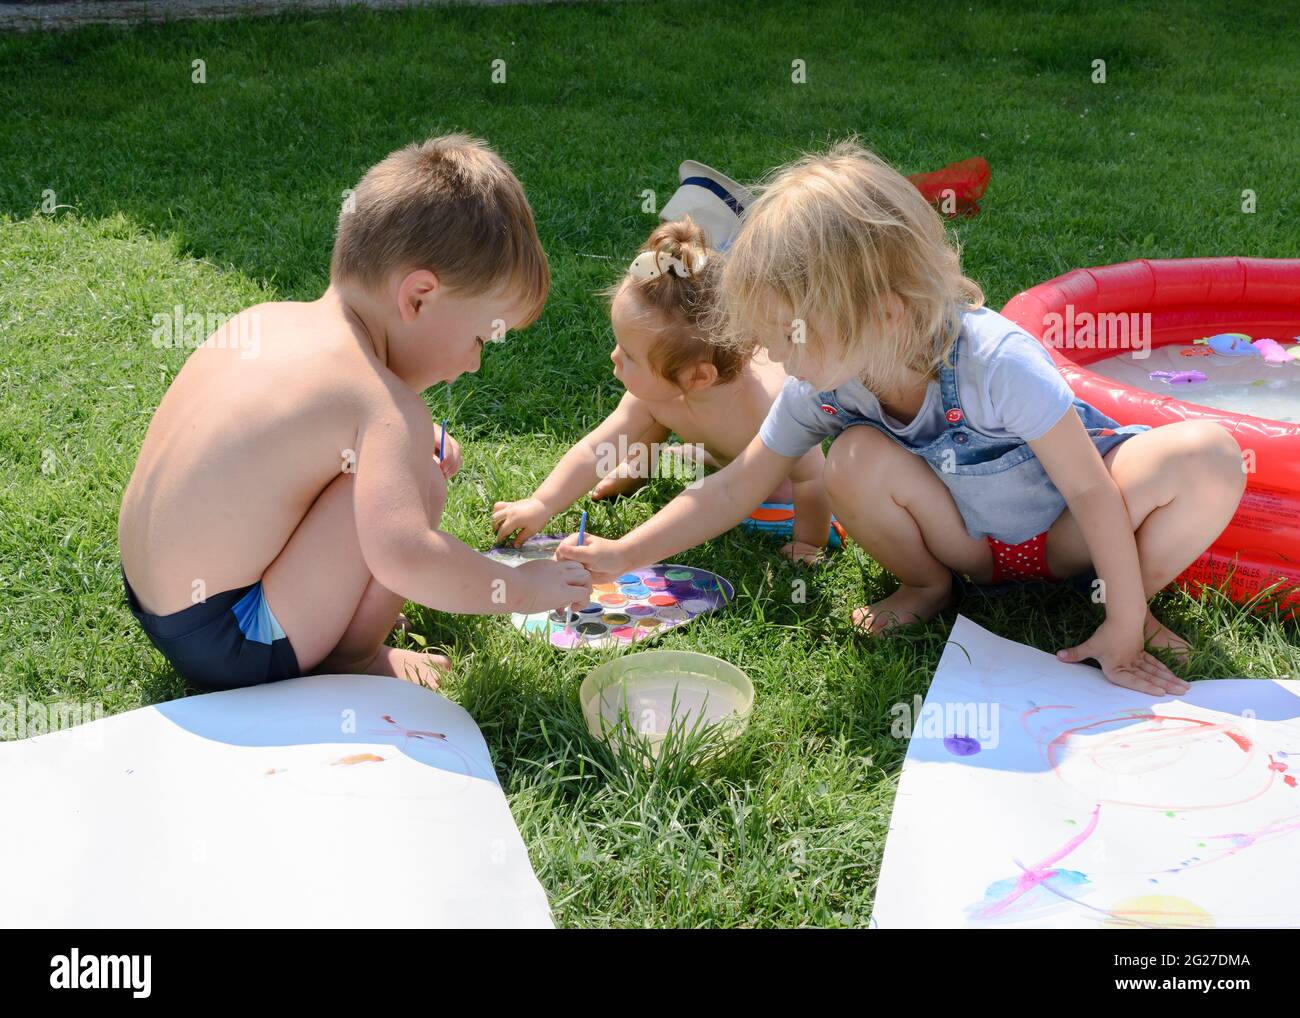 Les enfants sur la pelouse ensoleillée devant la maison peignent avec des peintures Banque D'Images